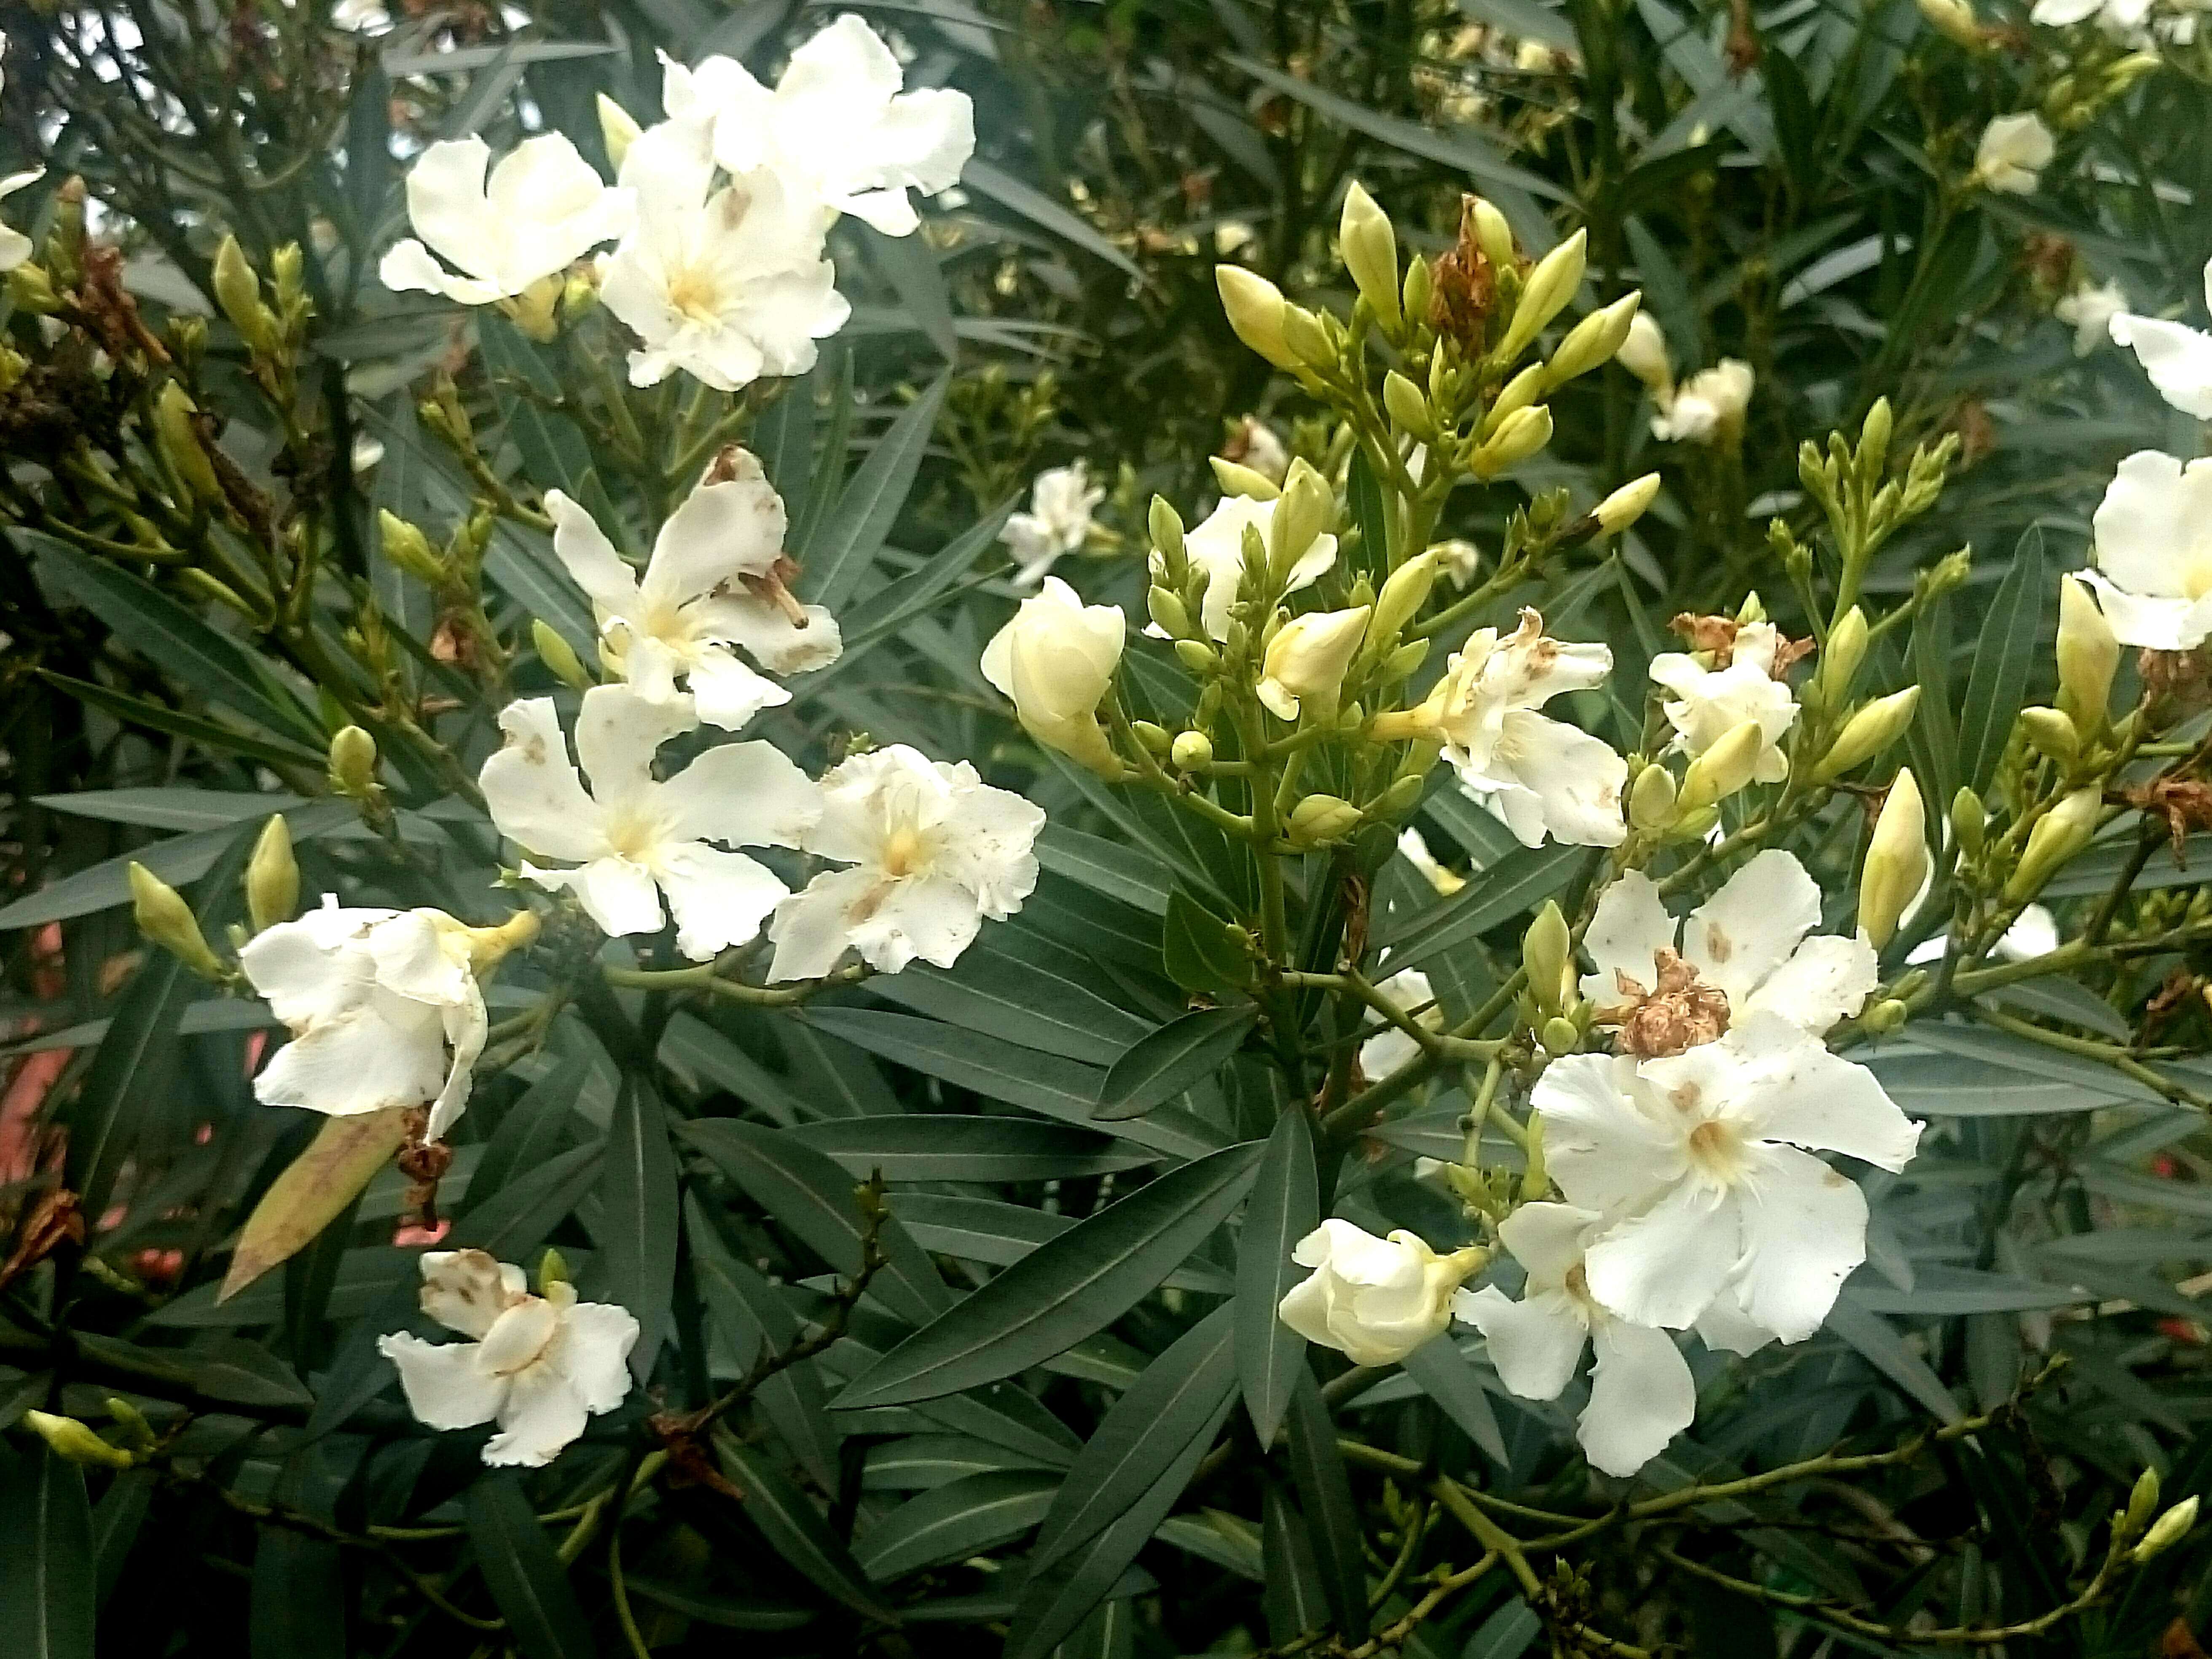 Image of Oleander